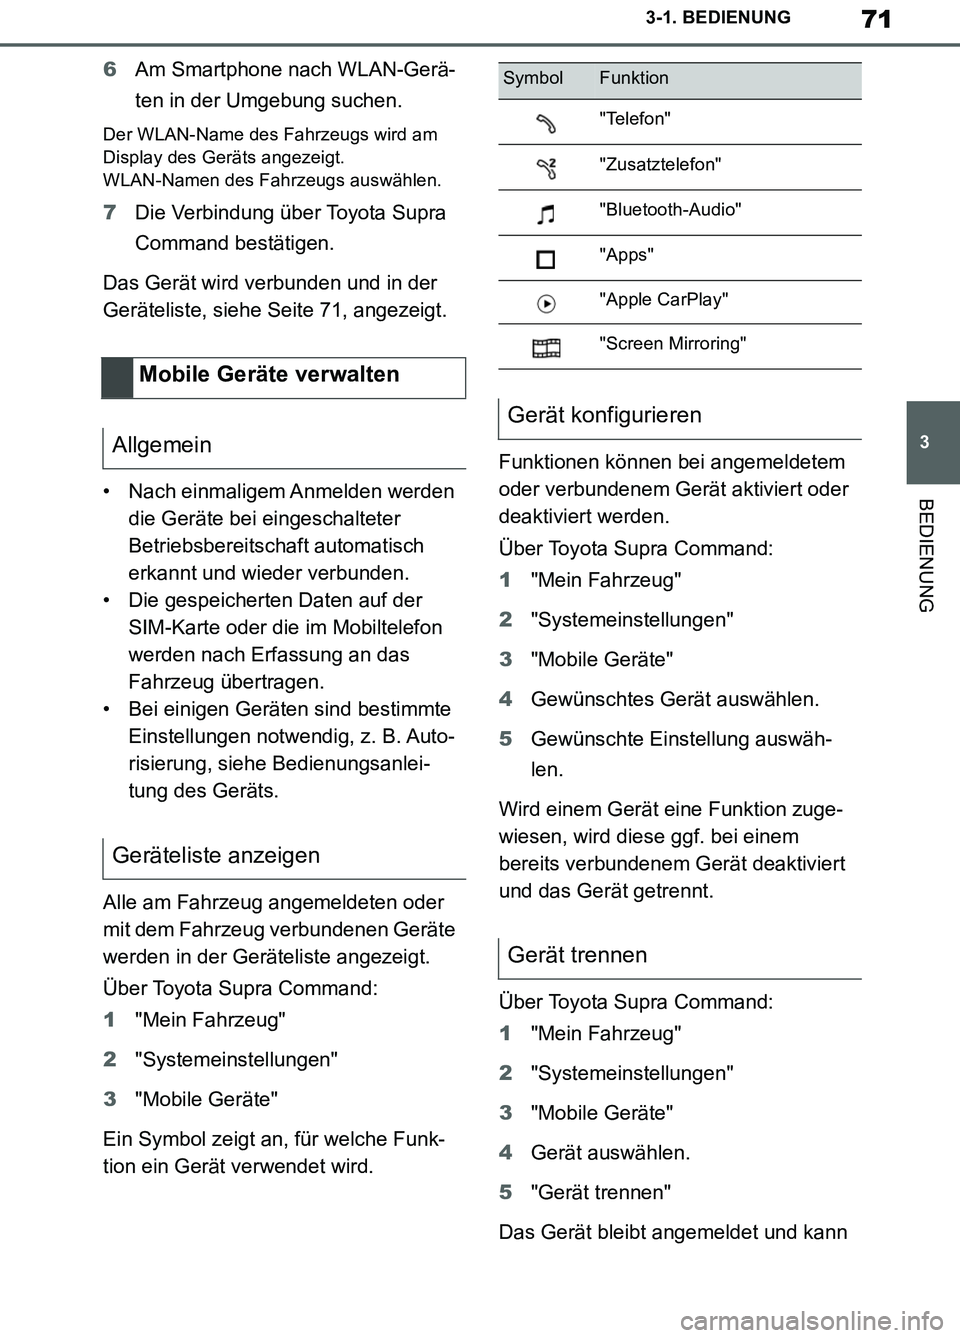 TOYOTA SUPRA 2019  Betriebsanleitungen (in German) 71
3
Supra Owner’s Manual_EM
3-1. BEDIENUNG
BEDIENUNG
6Am Smartphone nach WLAN-Gerä-
ten in der Umgebung suchen.
Der WLAN-Name des Fahrzeugs wird am 
Display des Geräts angezeigt. 
WLAN-Namen des 